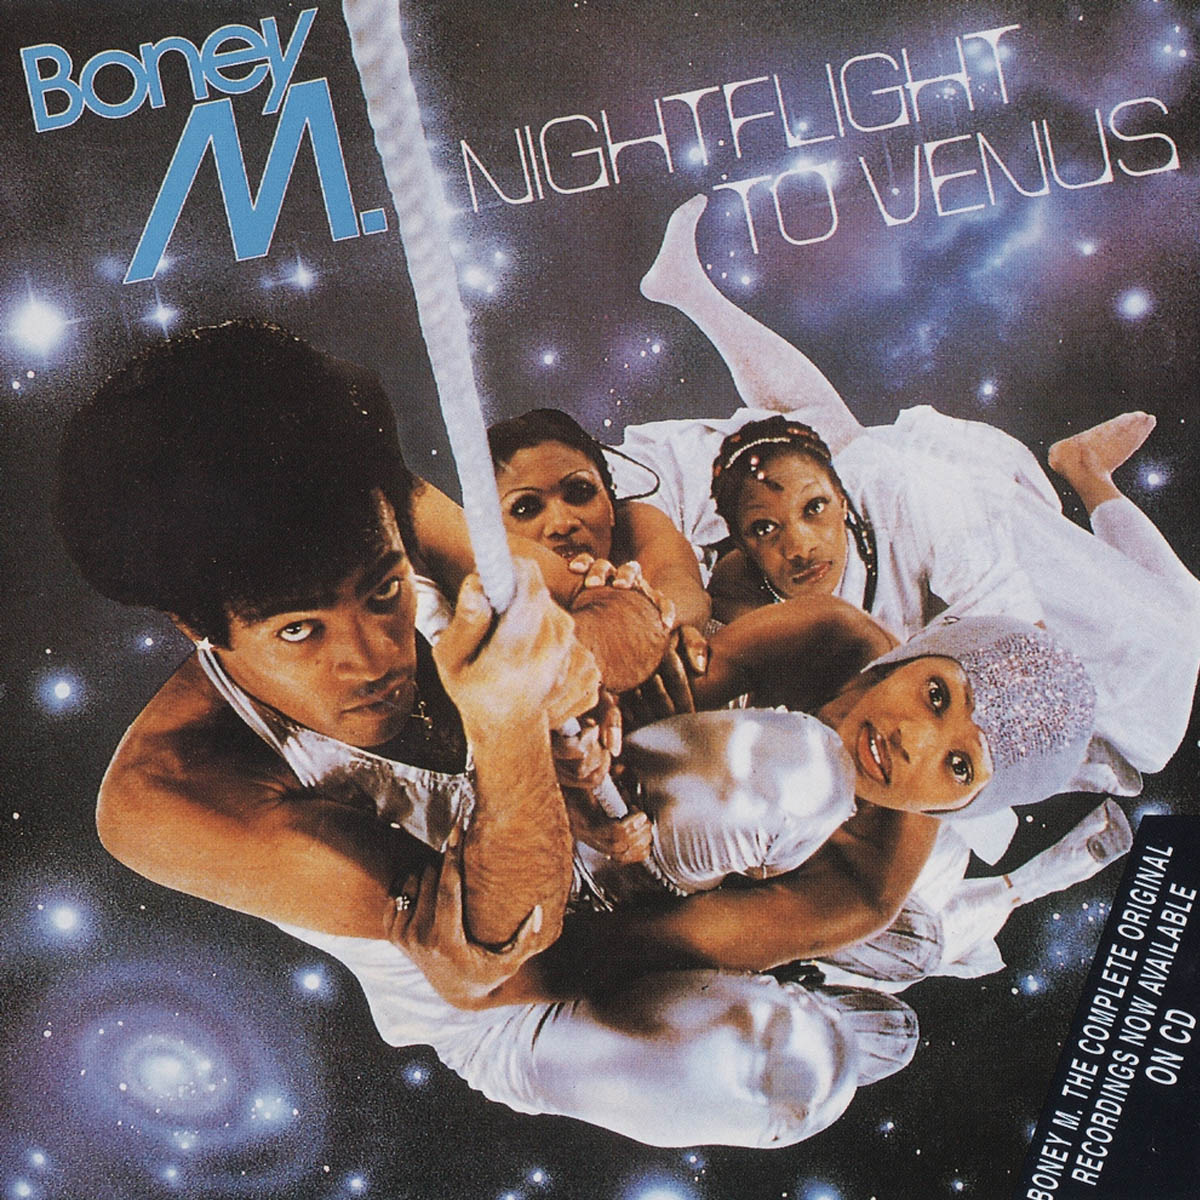 Couverture de l'album "Nightflight to Venus" (1078) de Boney M.